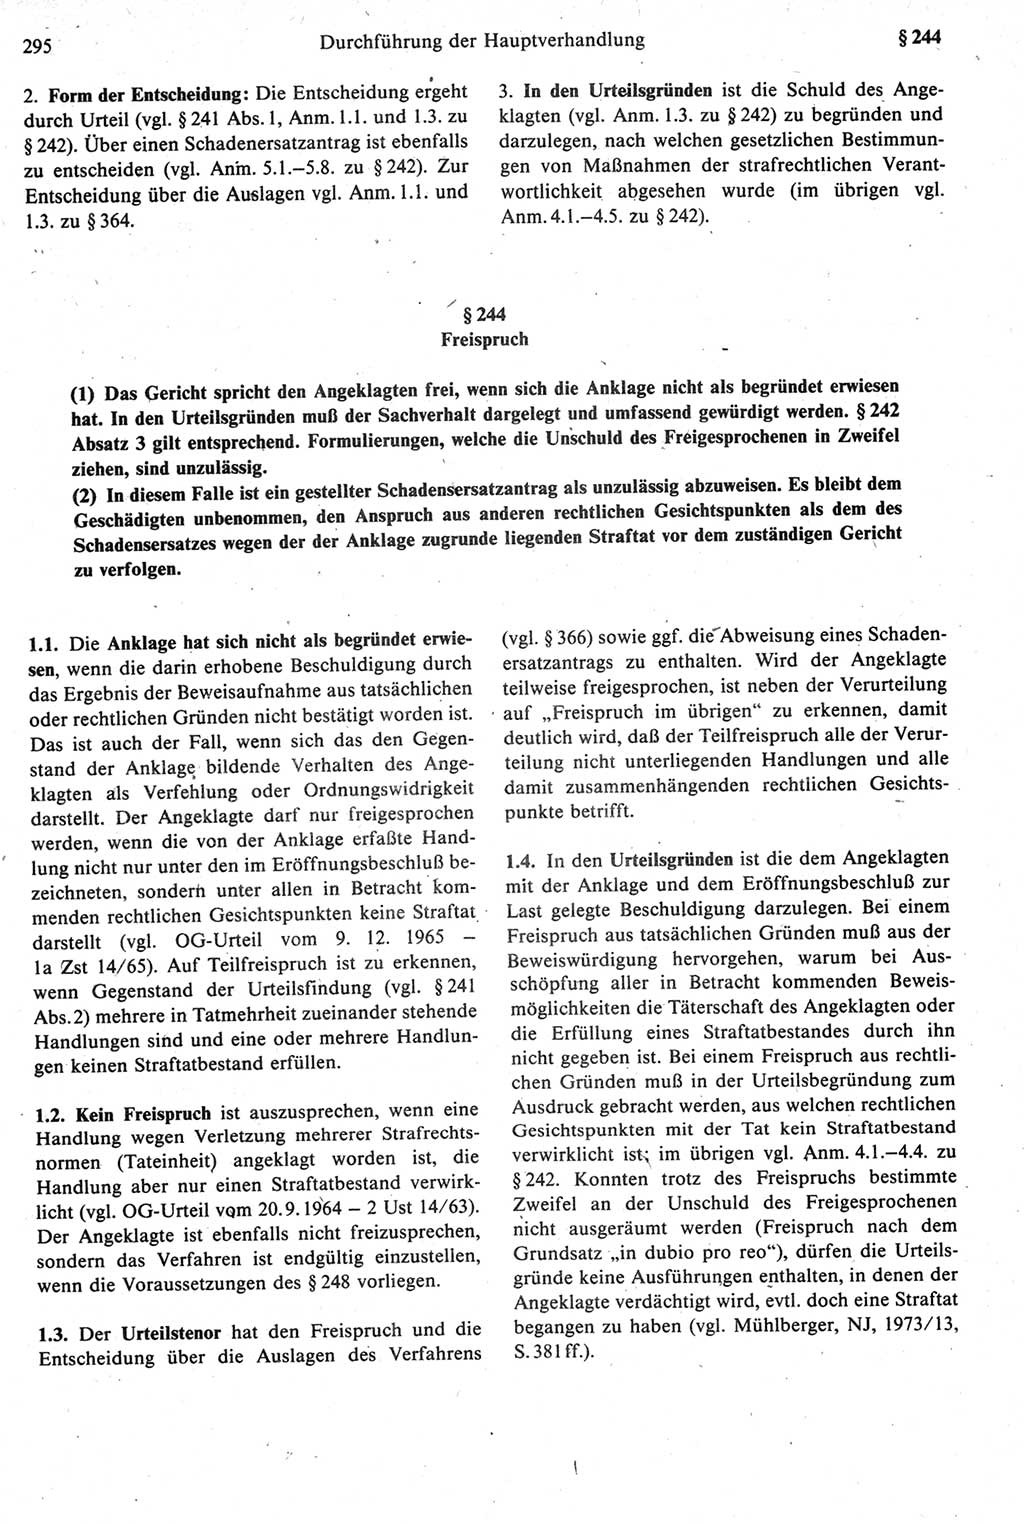 Strafprozeßrecht der DDR [Deutsche Demokratische Republik], Kommentar zur Strafprozeßordnung (StPO) 1987, Seite 295 (Strafprozeßr. DDR Komm. StPO 1987, S. 295)